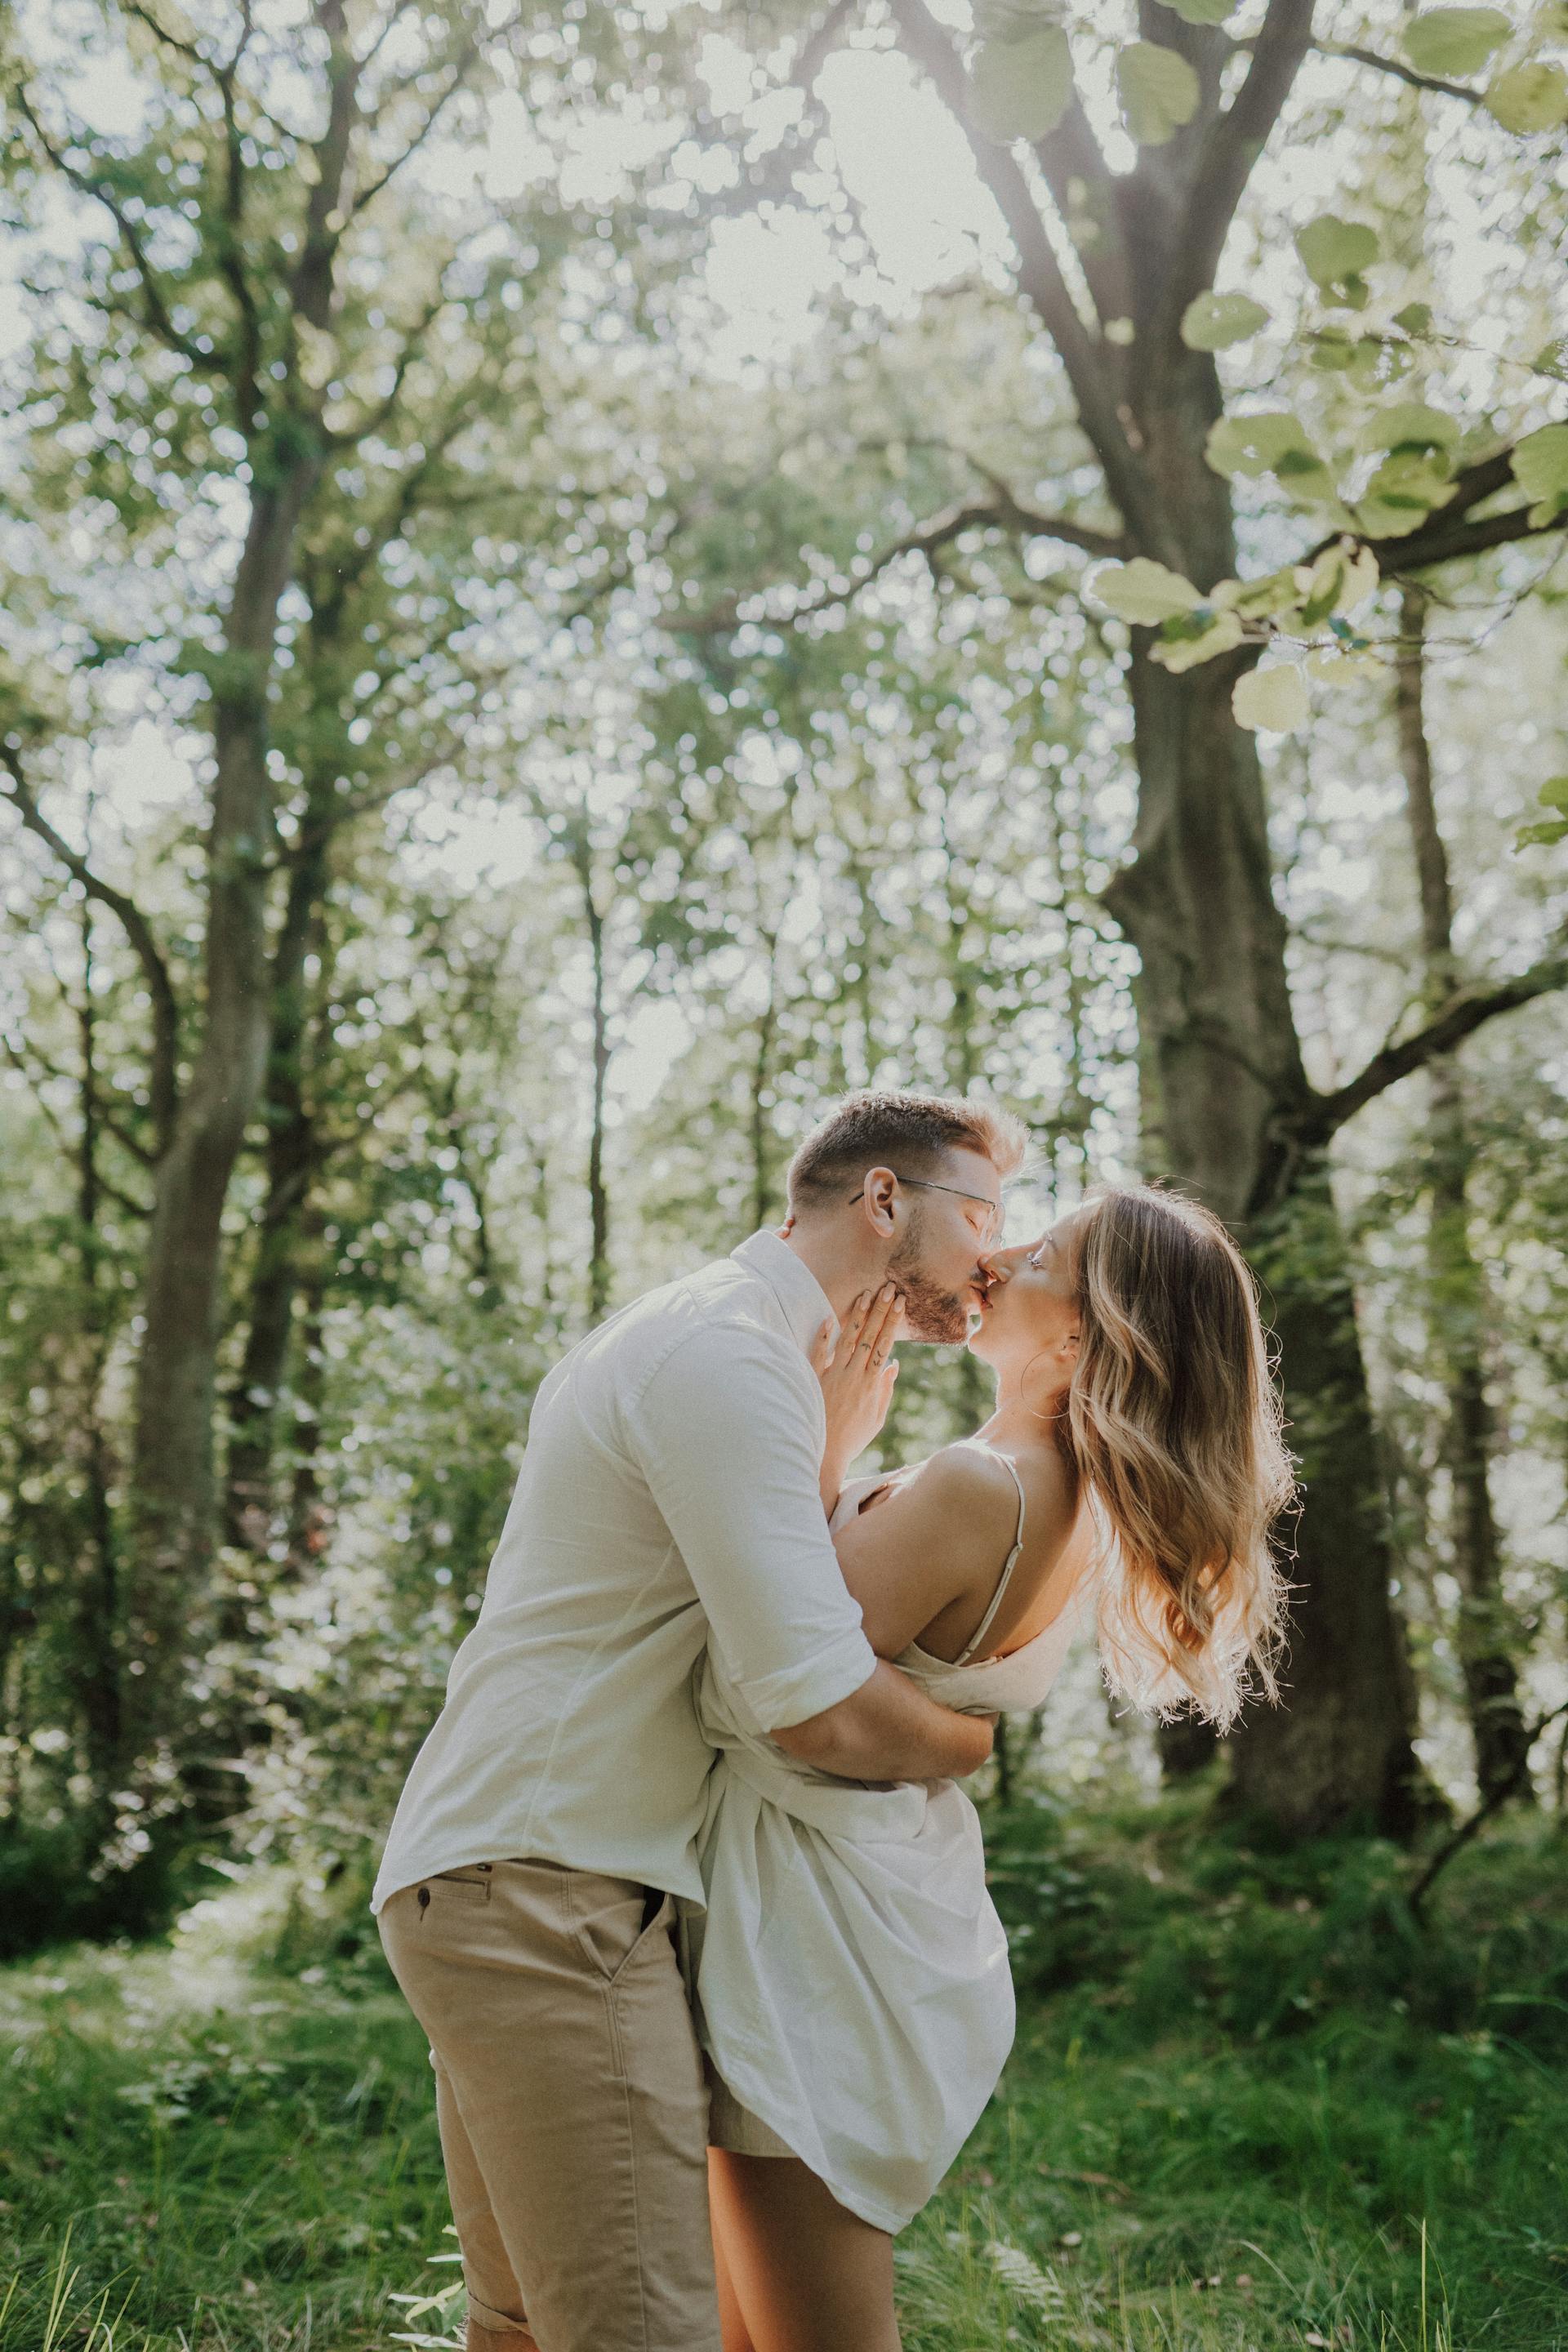 Un jeune couple s'embrassant dans une forêt | Source : Pexels